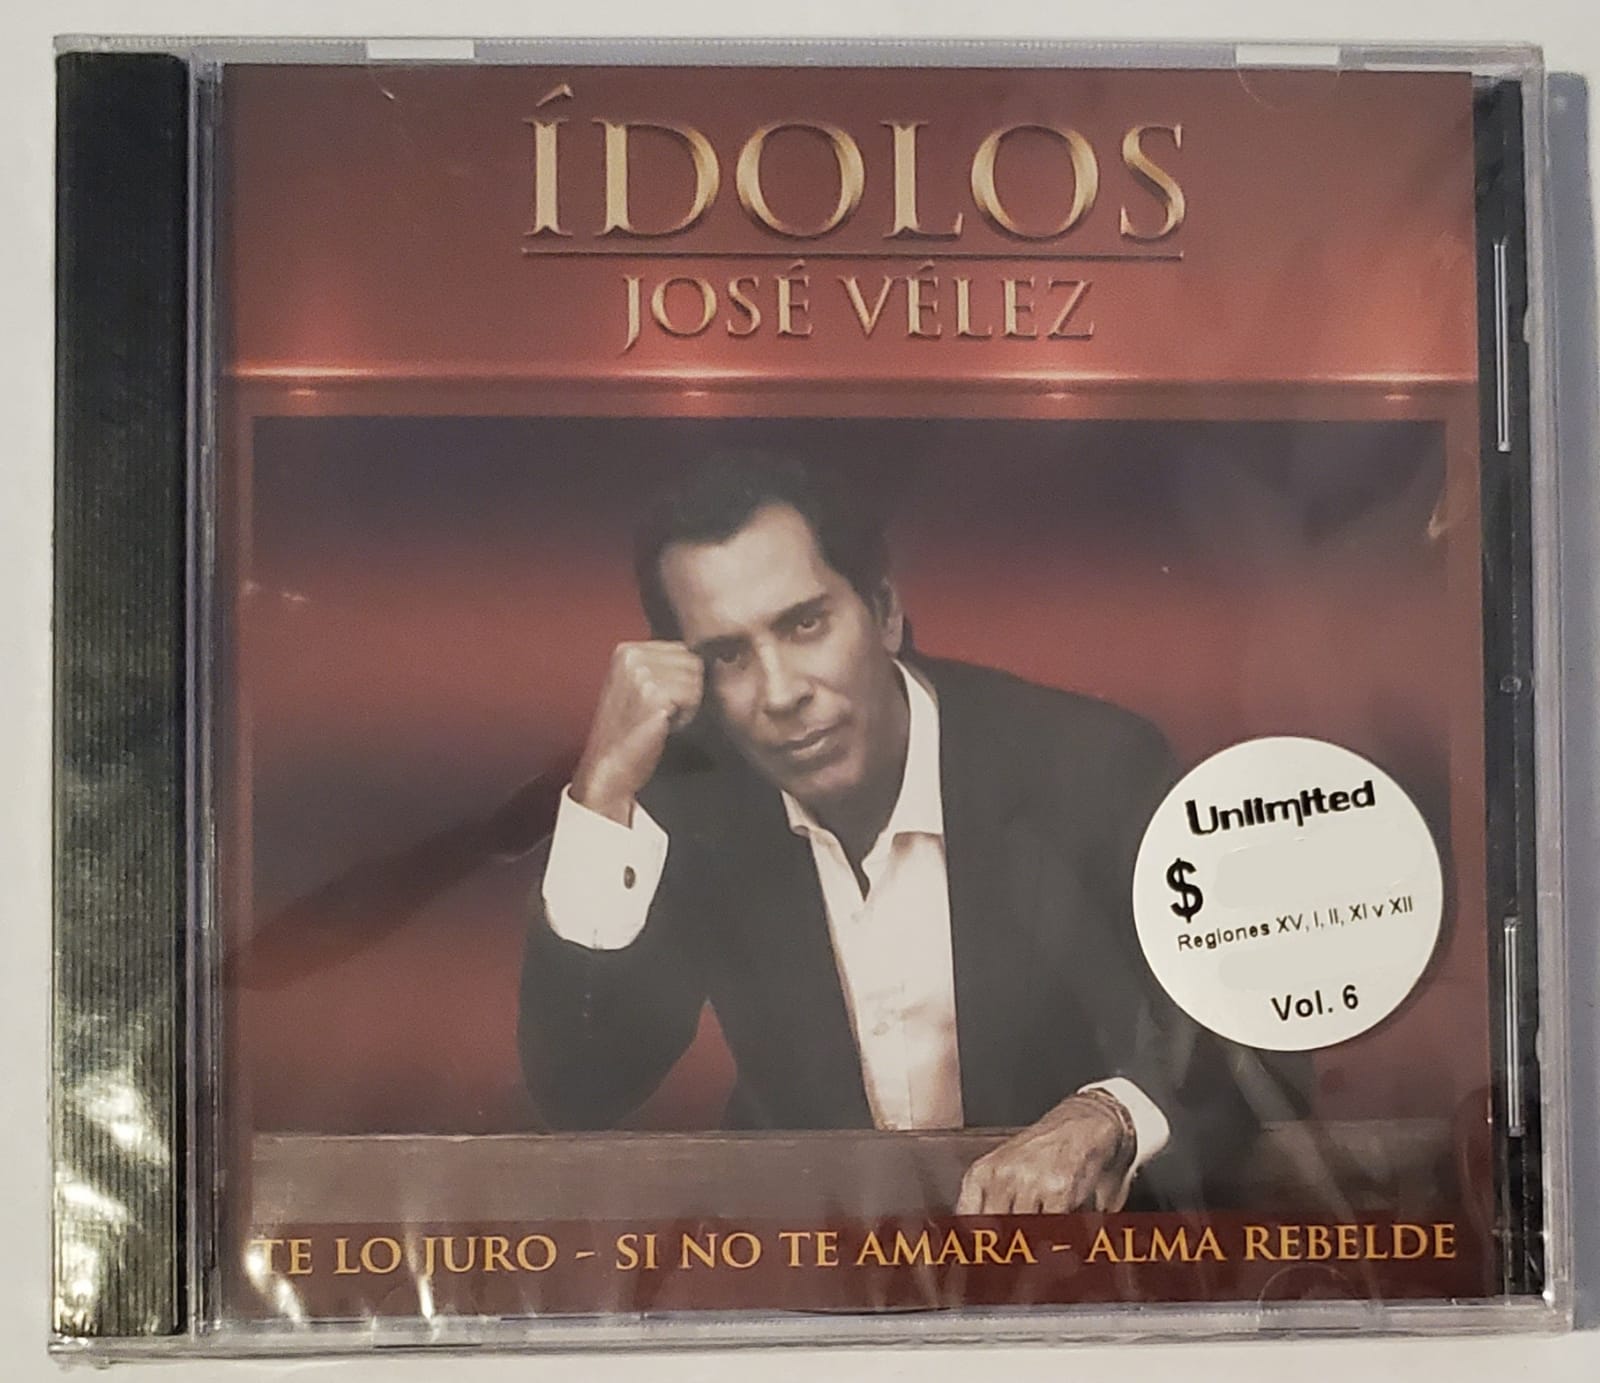 CD José Velez - Ídolos: José Velez